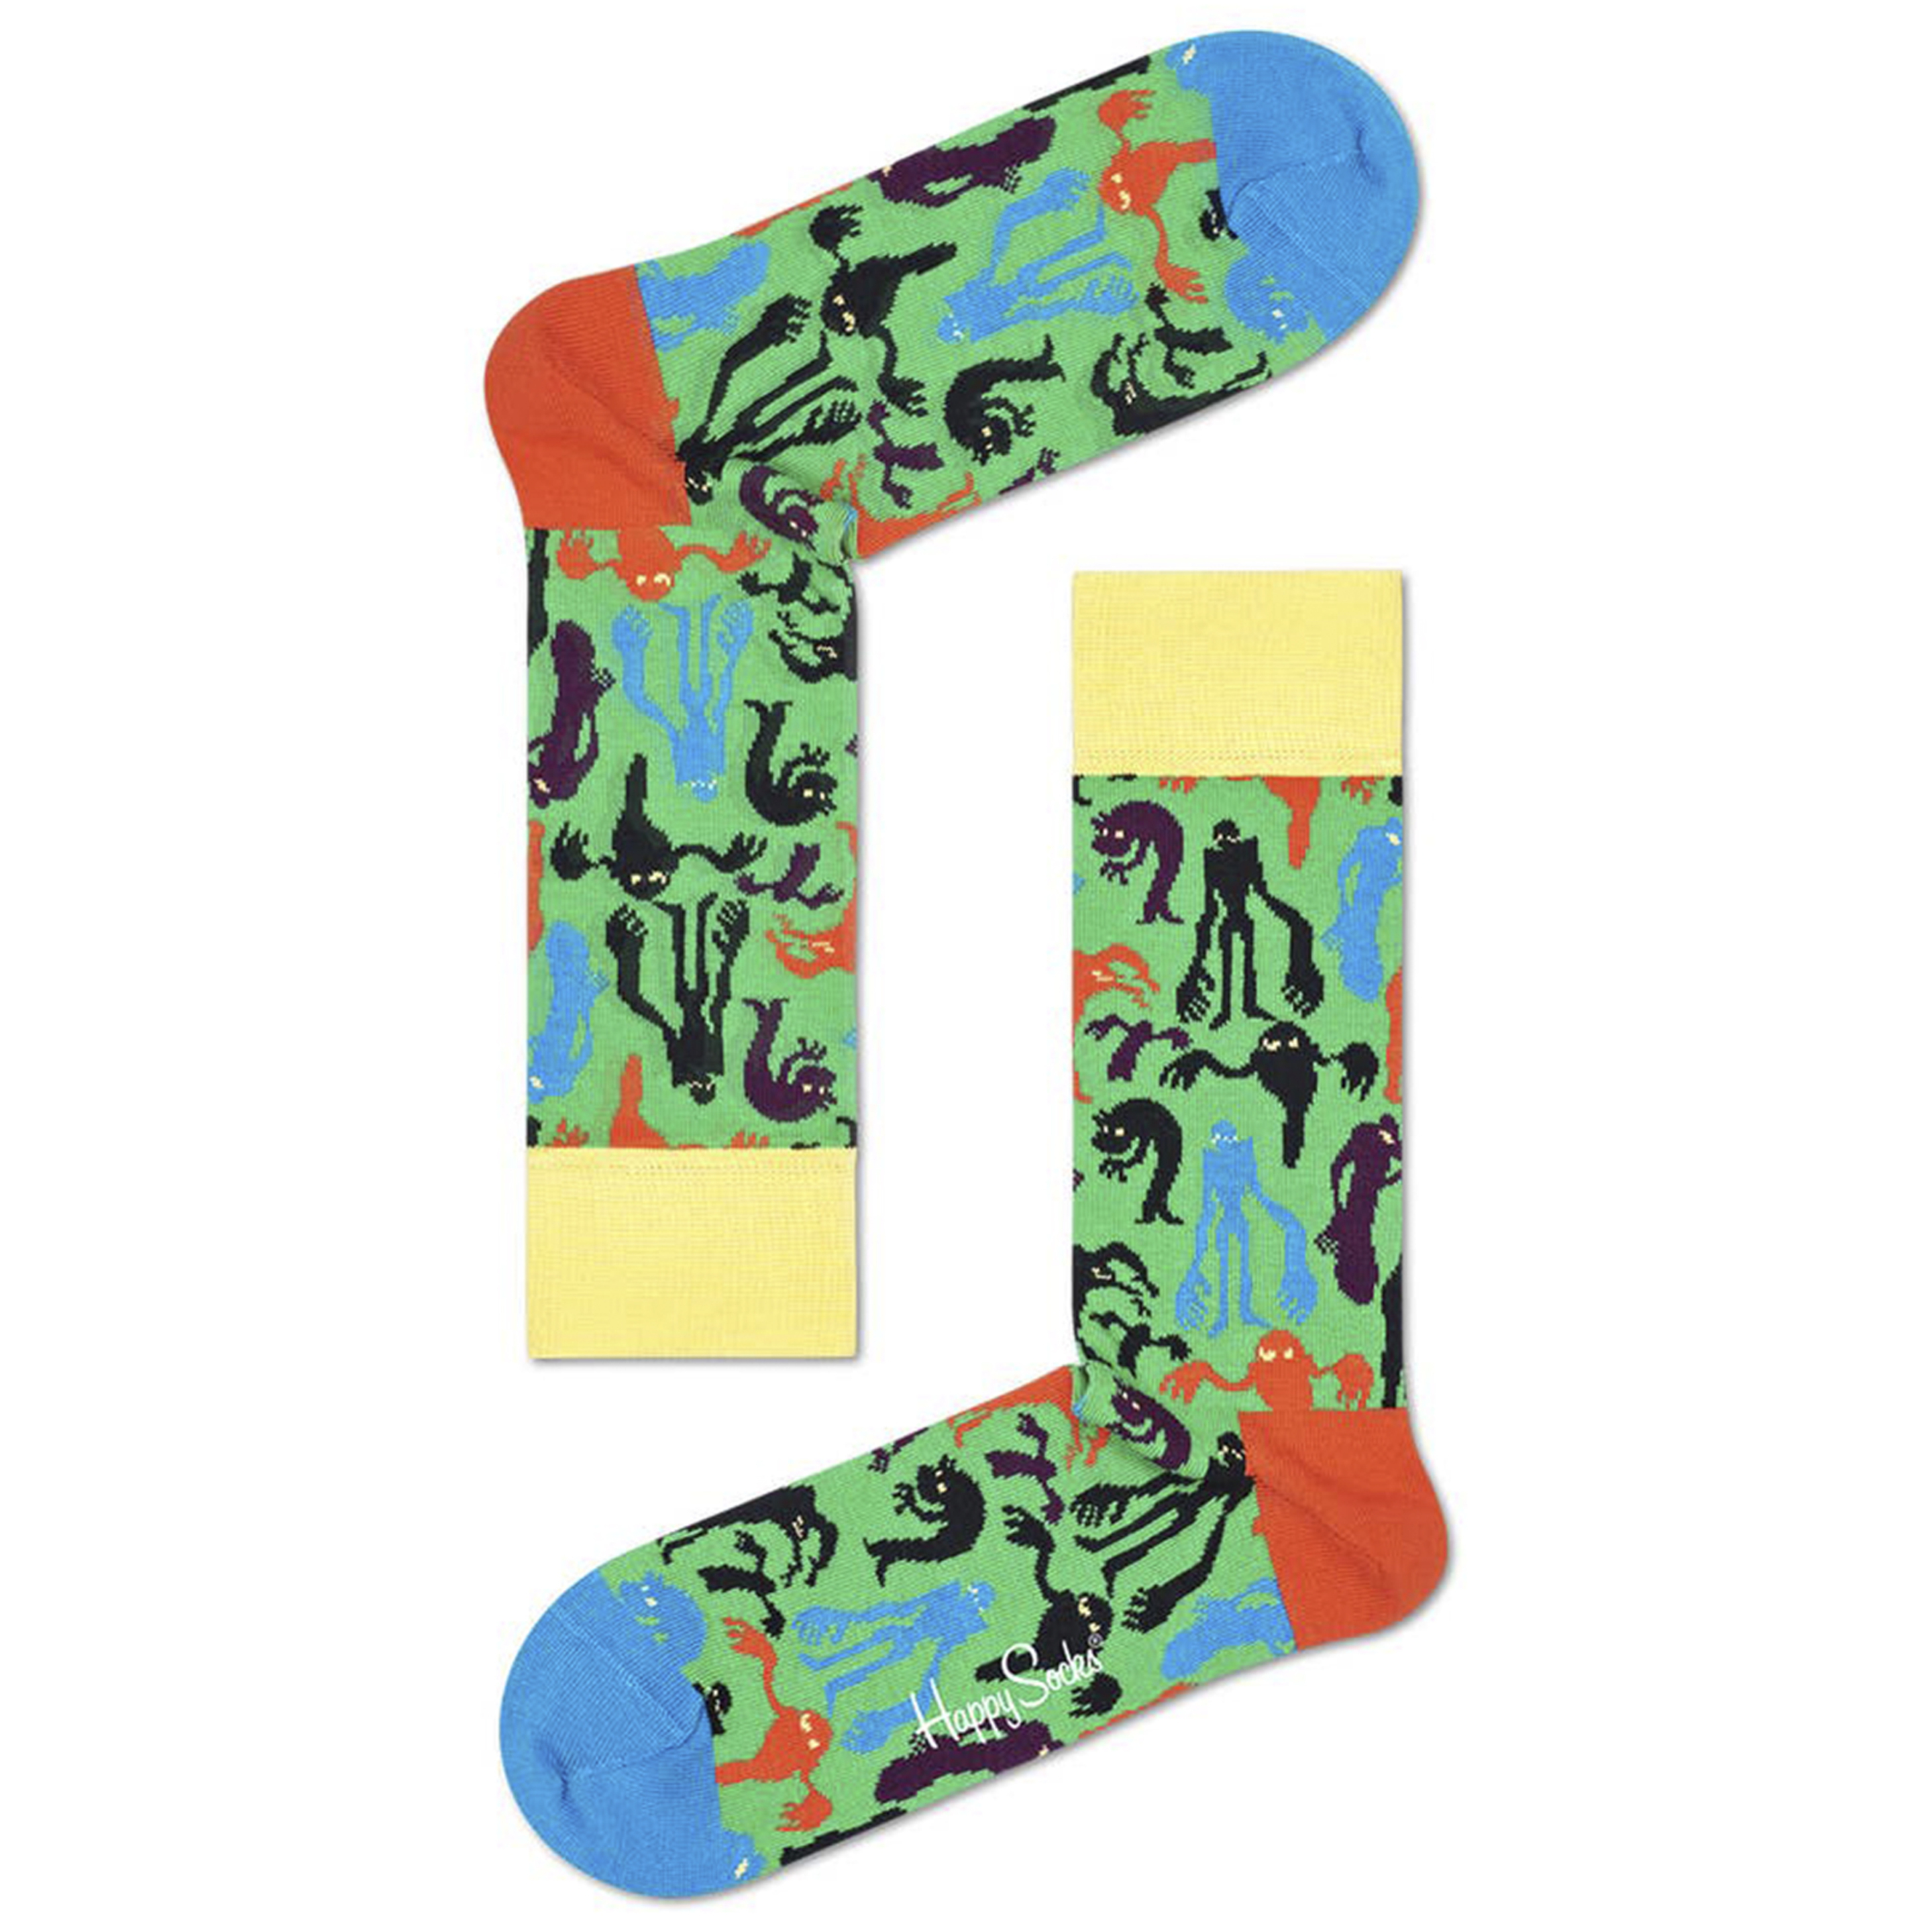 Calcetines Happy Socks Fantasmas - multicolor - 